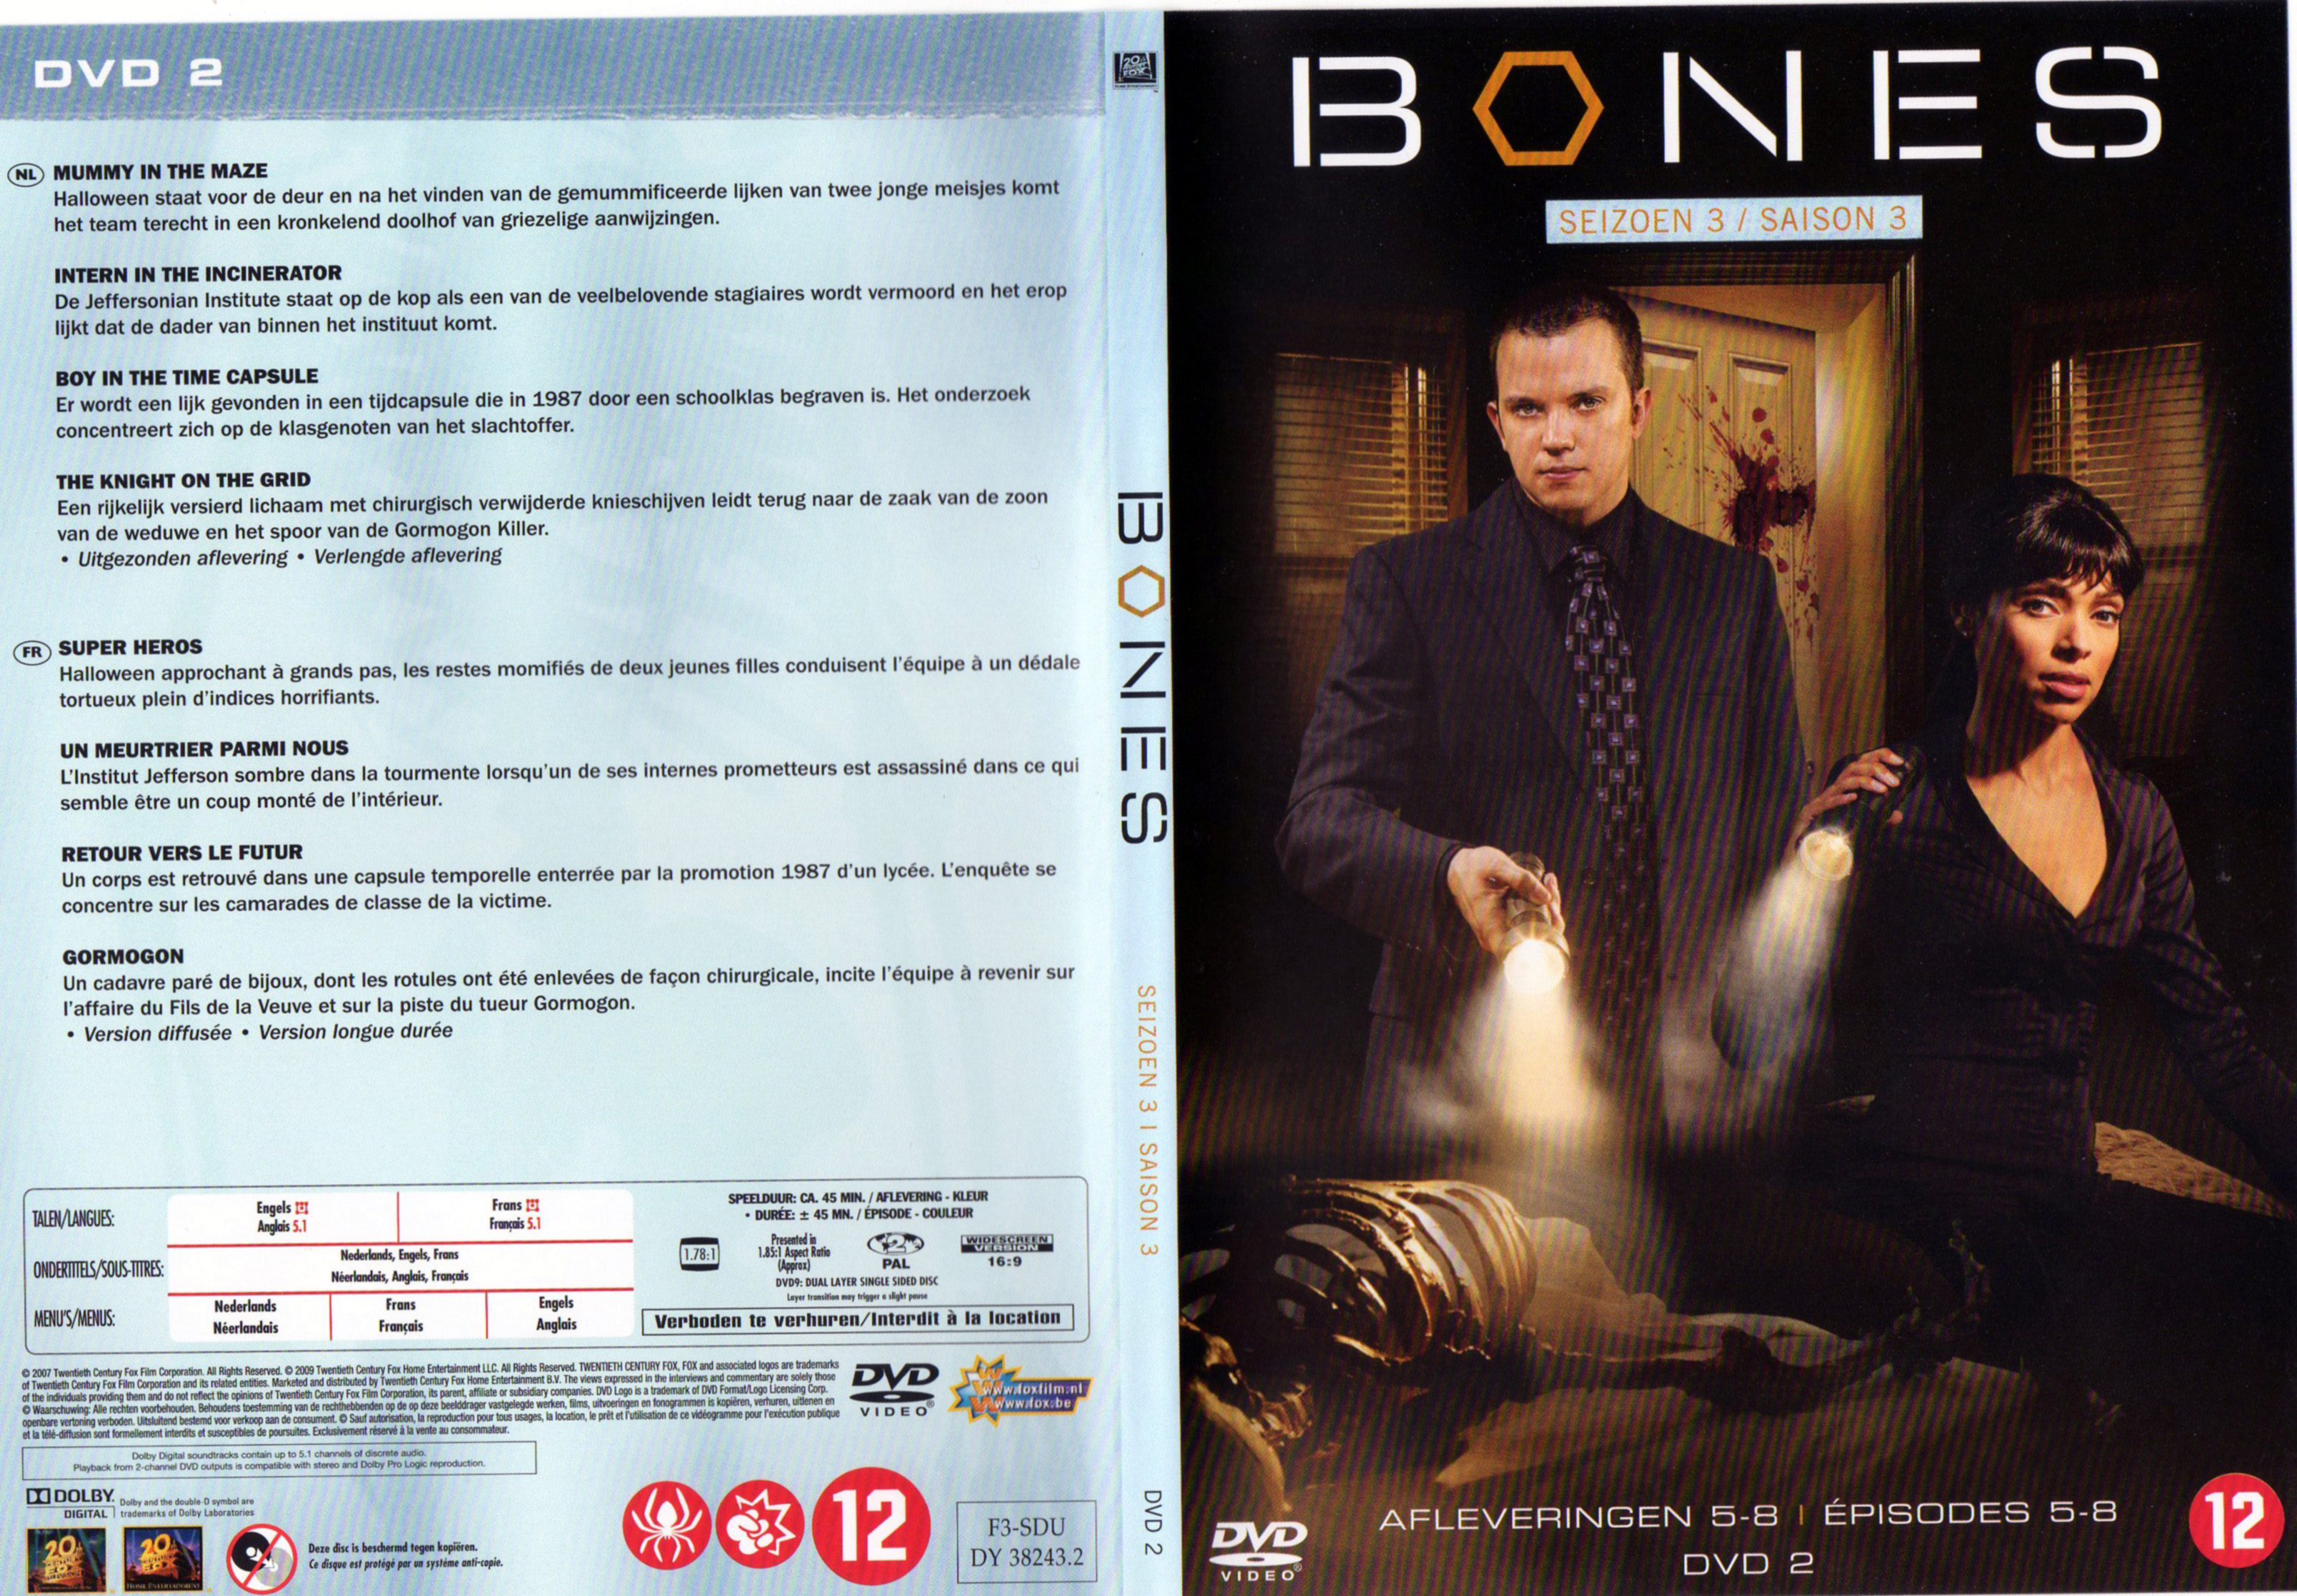 Jaquette DVD Bones Saison 3 DVD 2 v2